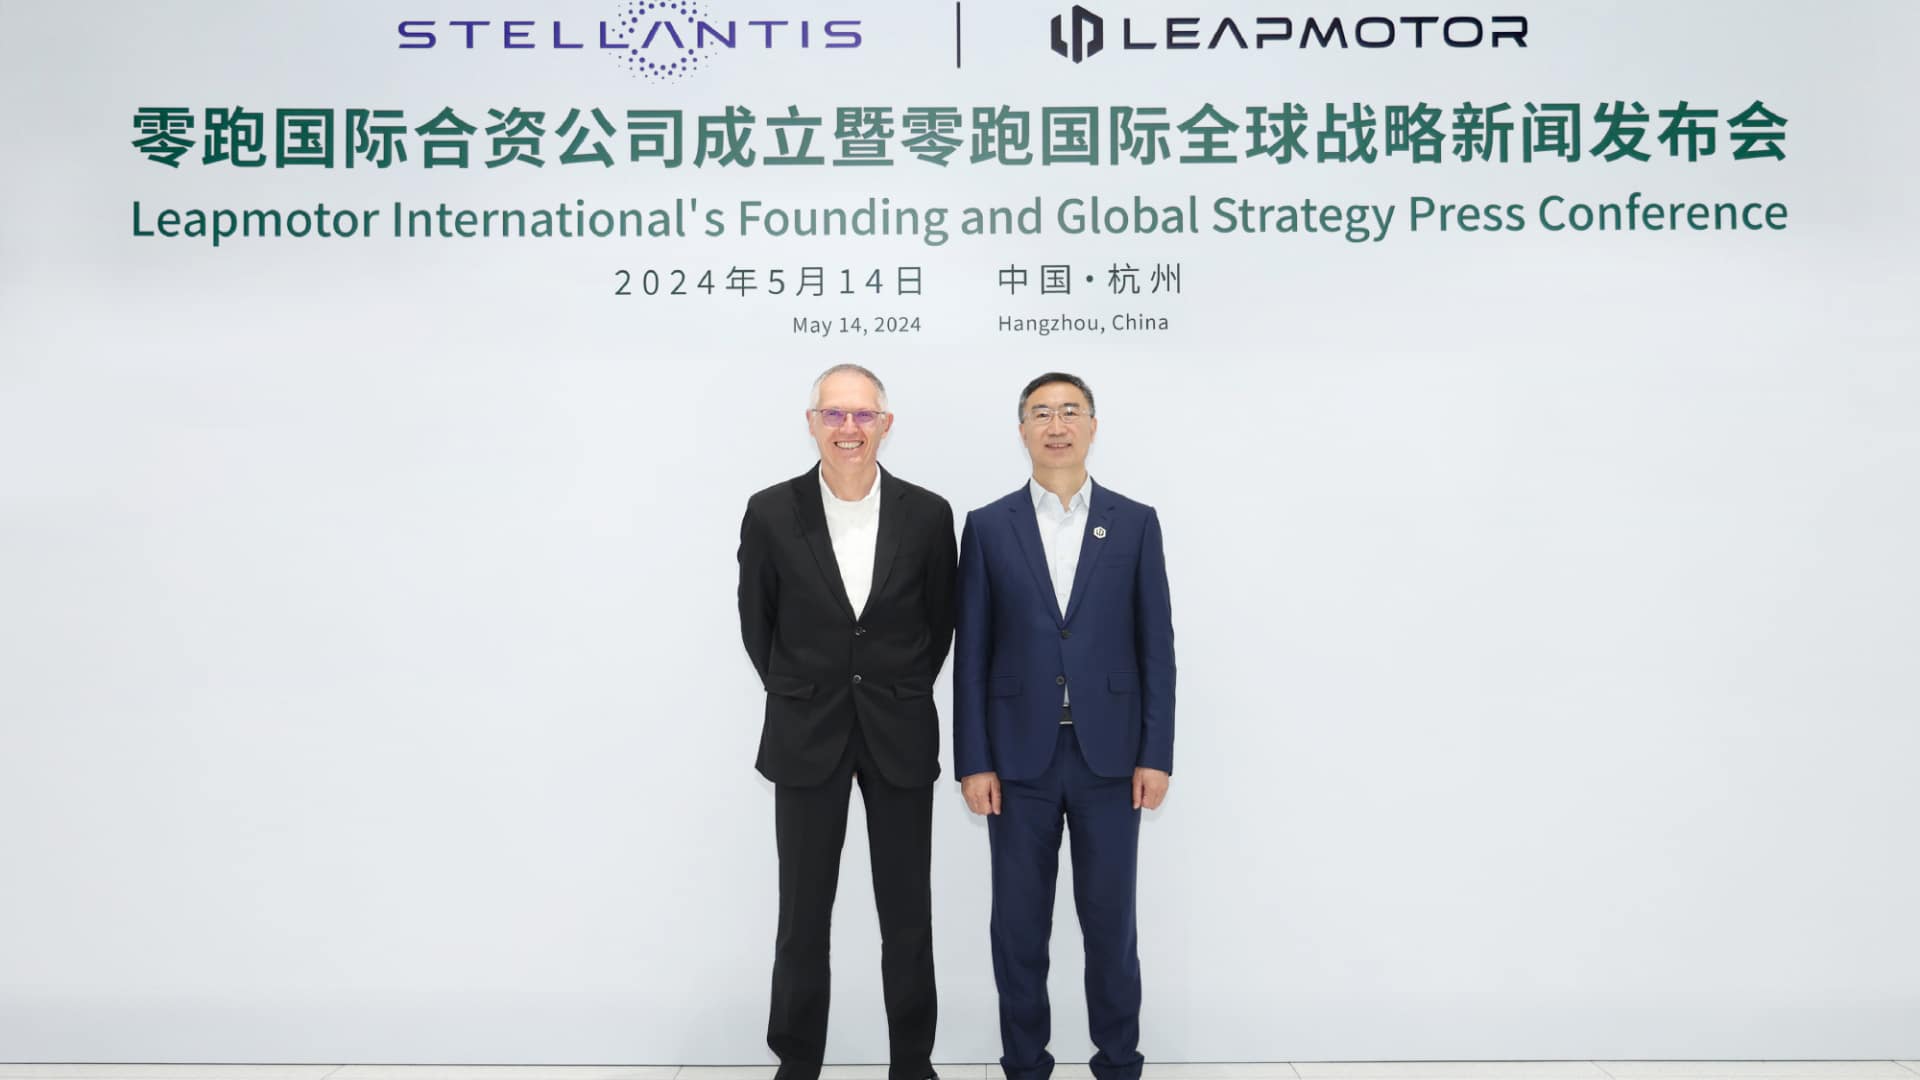 В прошлом году компания Leapmotor попала в заголовки газет, подписав соглашение о стратегическом сотрудничестве с Stellantis, четвёртым по величине мировым автопроизводителем. В результате было создано совместное предприятие Leapmotor International. 